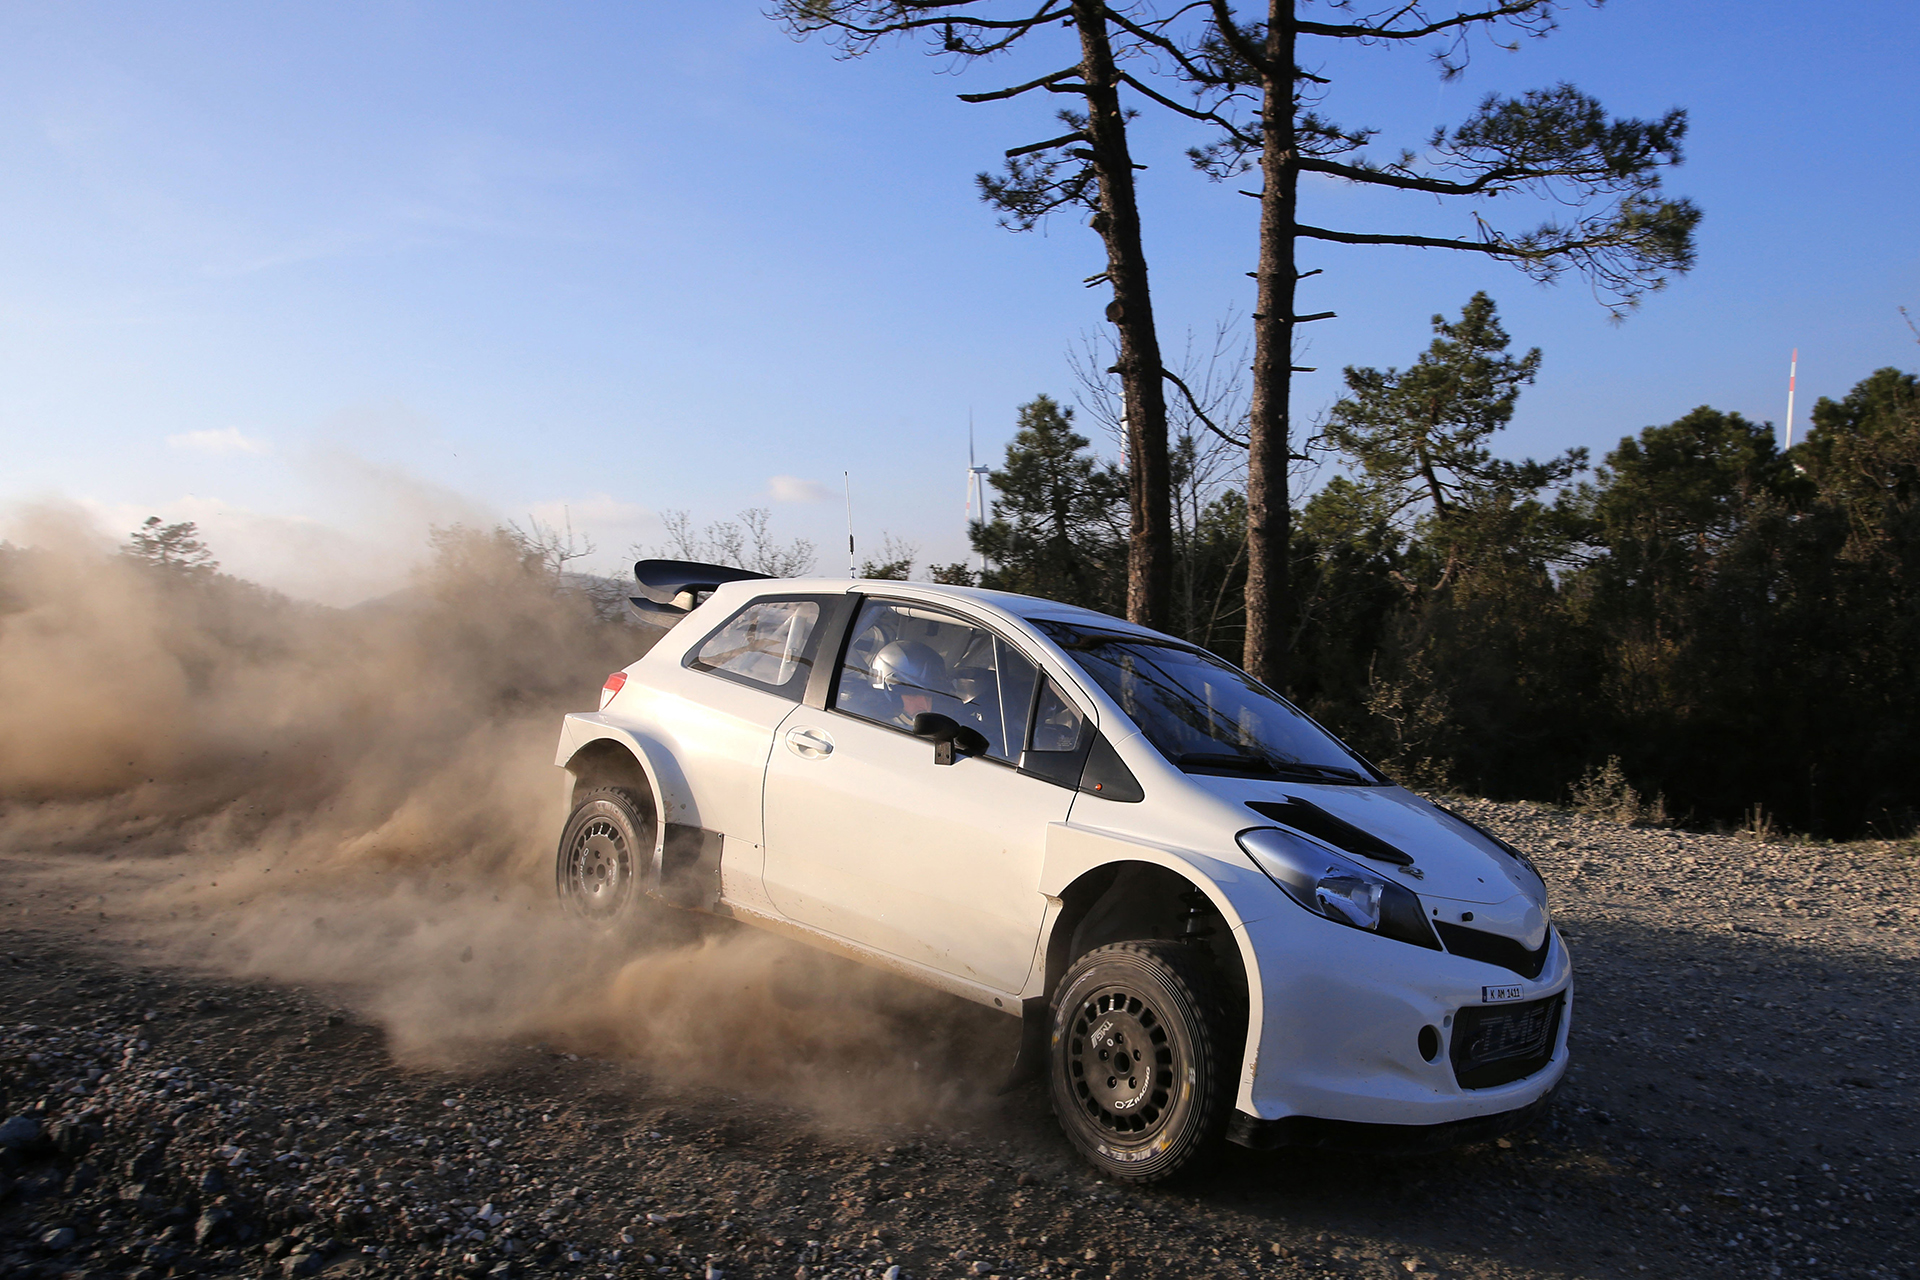 Yaris WRC Testing